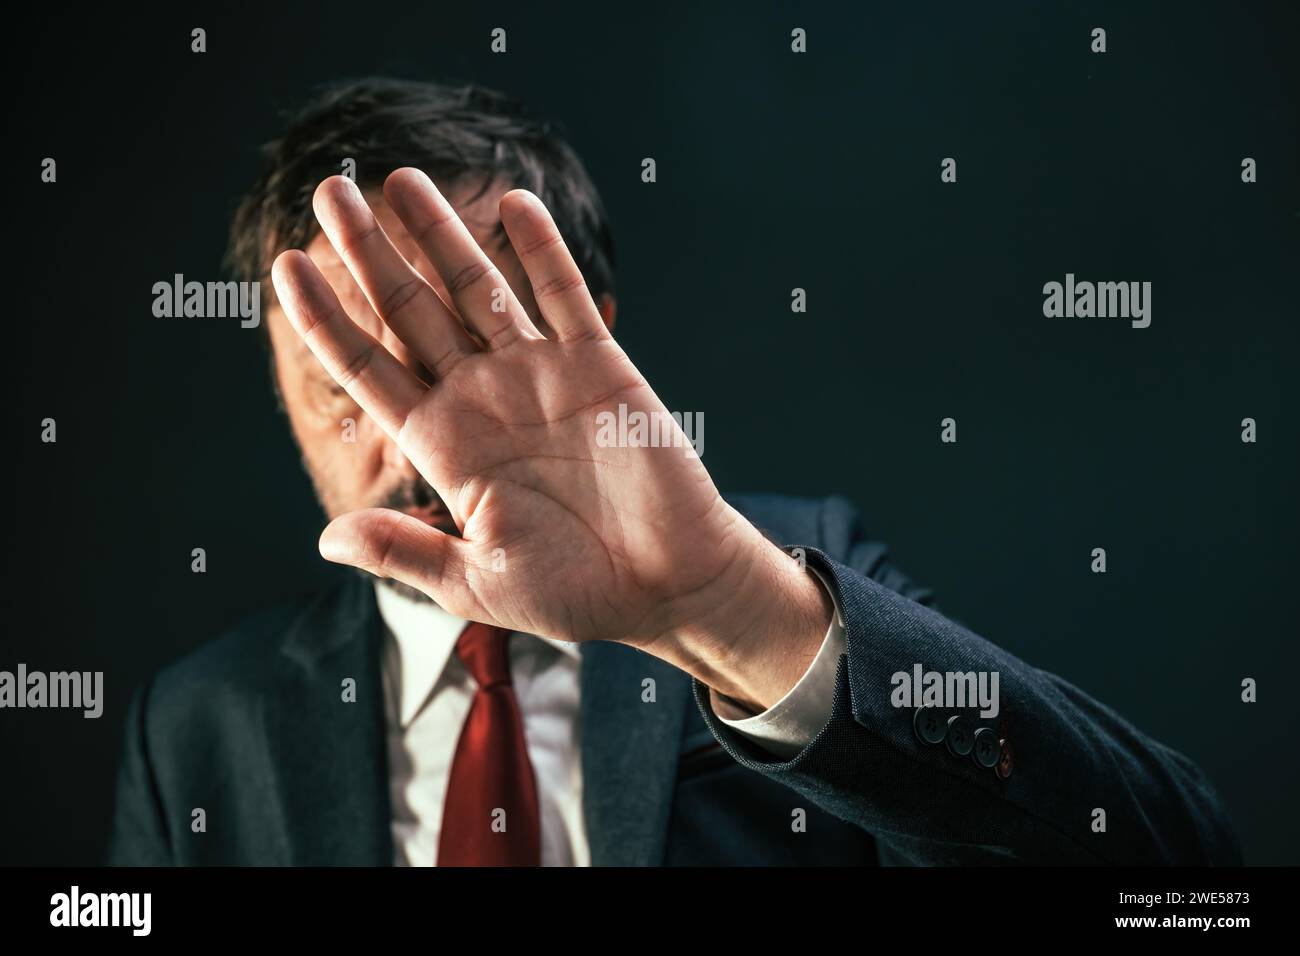 Schiefer Politiker, der das Gesicht verdeckt und sich vor Paparazzi-Fotografen versteckt, selektiver Fokus Stockfoto